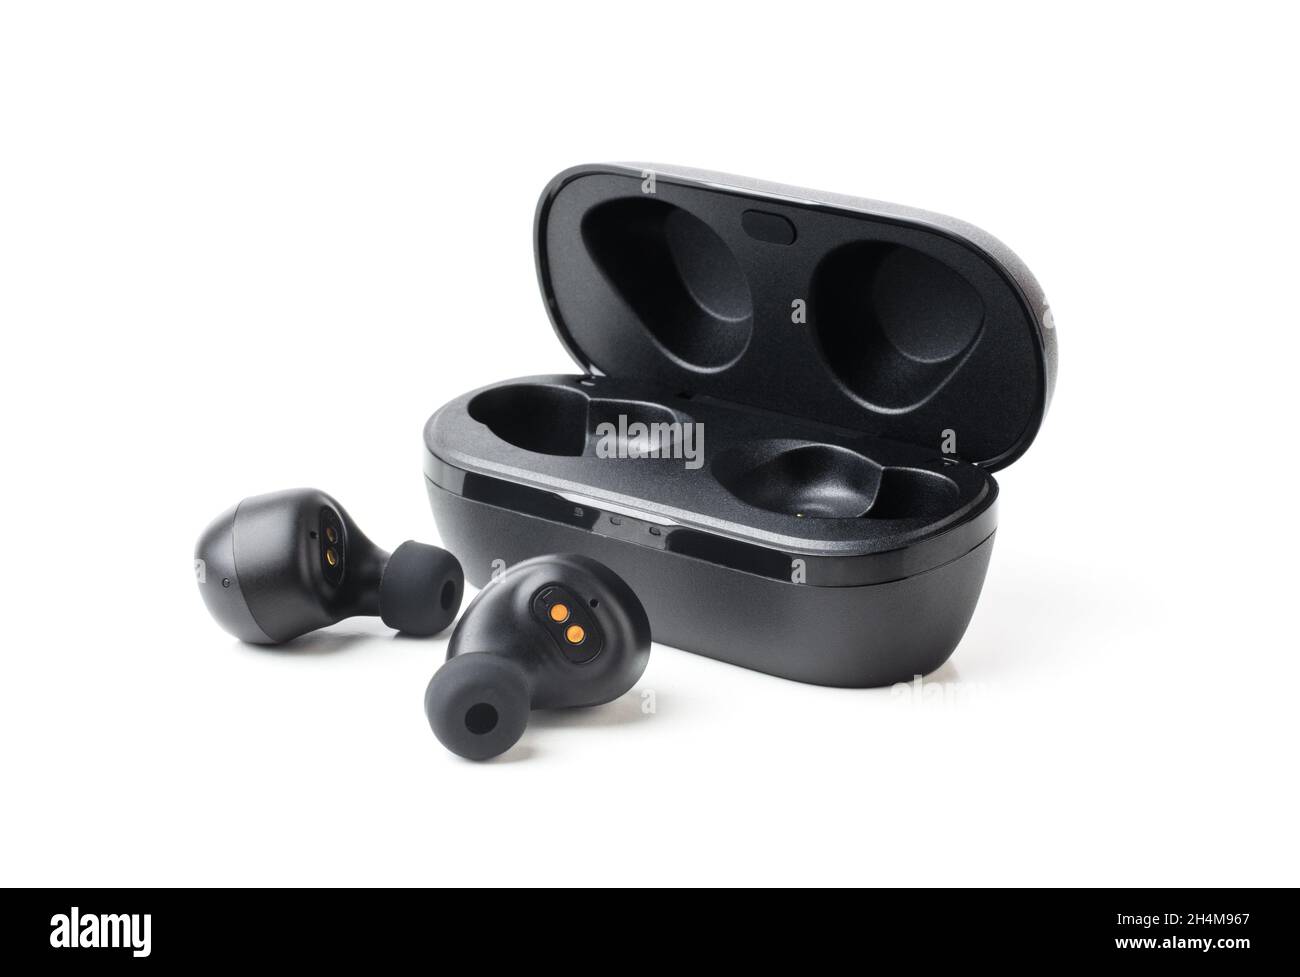 Los auriculares Bluetooth inalámbricos negros con carga sin contacto aíslan el primer plano sobre un fondo blanco Foto de stock